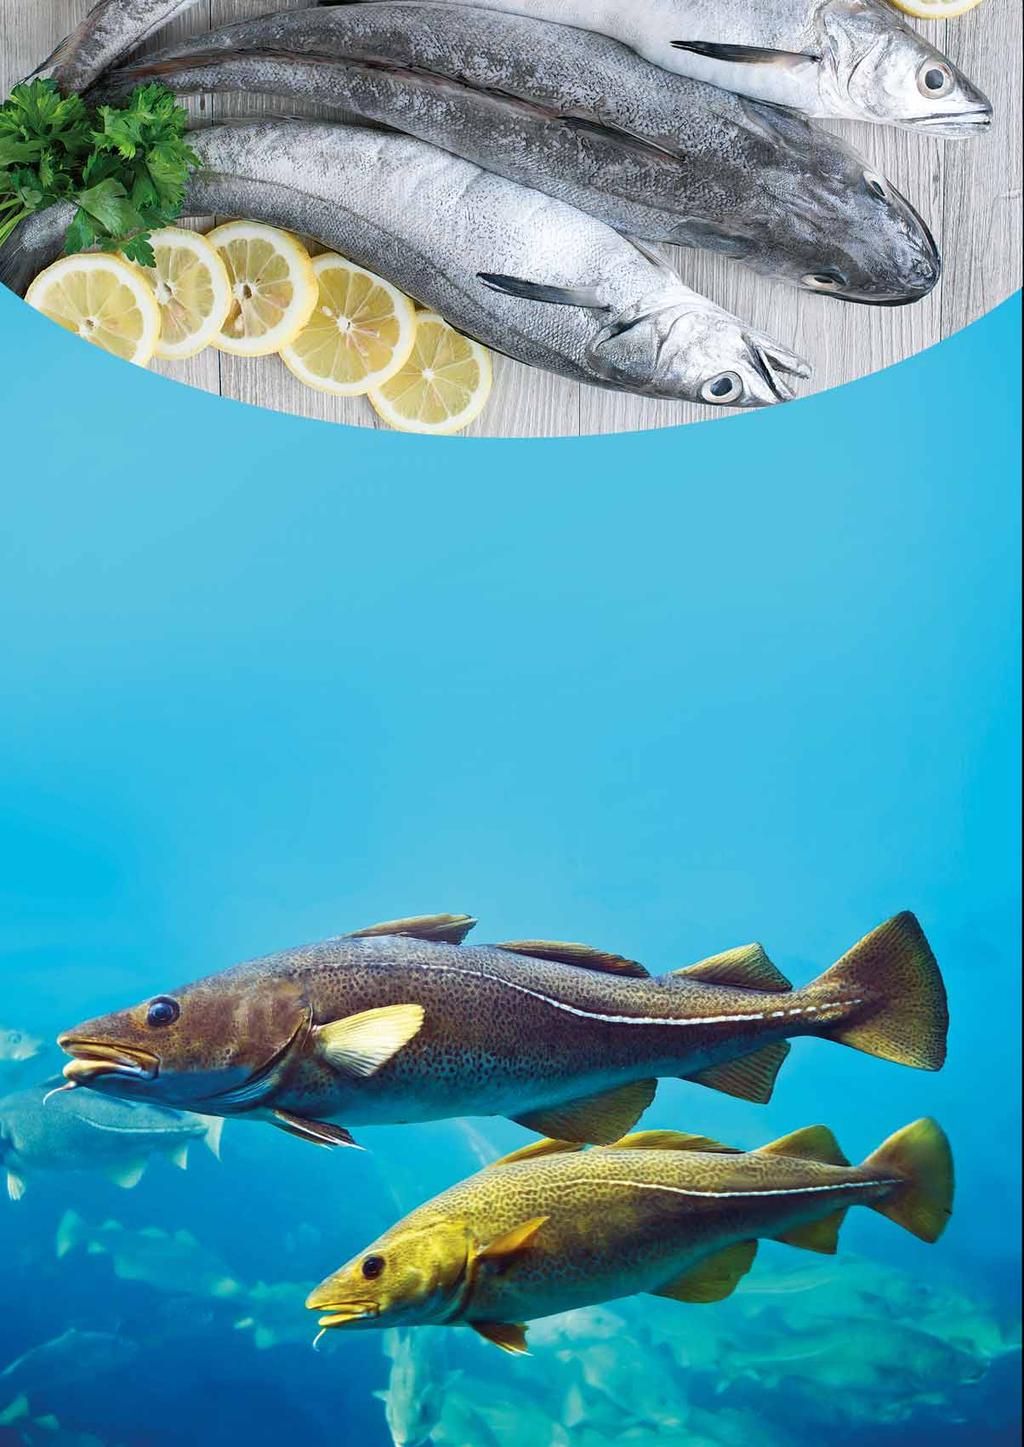 DORSZ RODZINA RYB DORSZOWATYCH: Jest to rodzina ryb morskich (miętus stanowi wyjątek), przeważnie dennych, drapieżnych, o długości dorosłych osobników 25-150 cm.